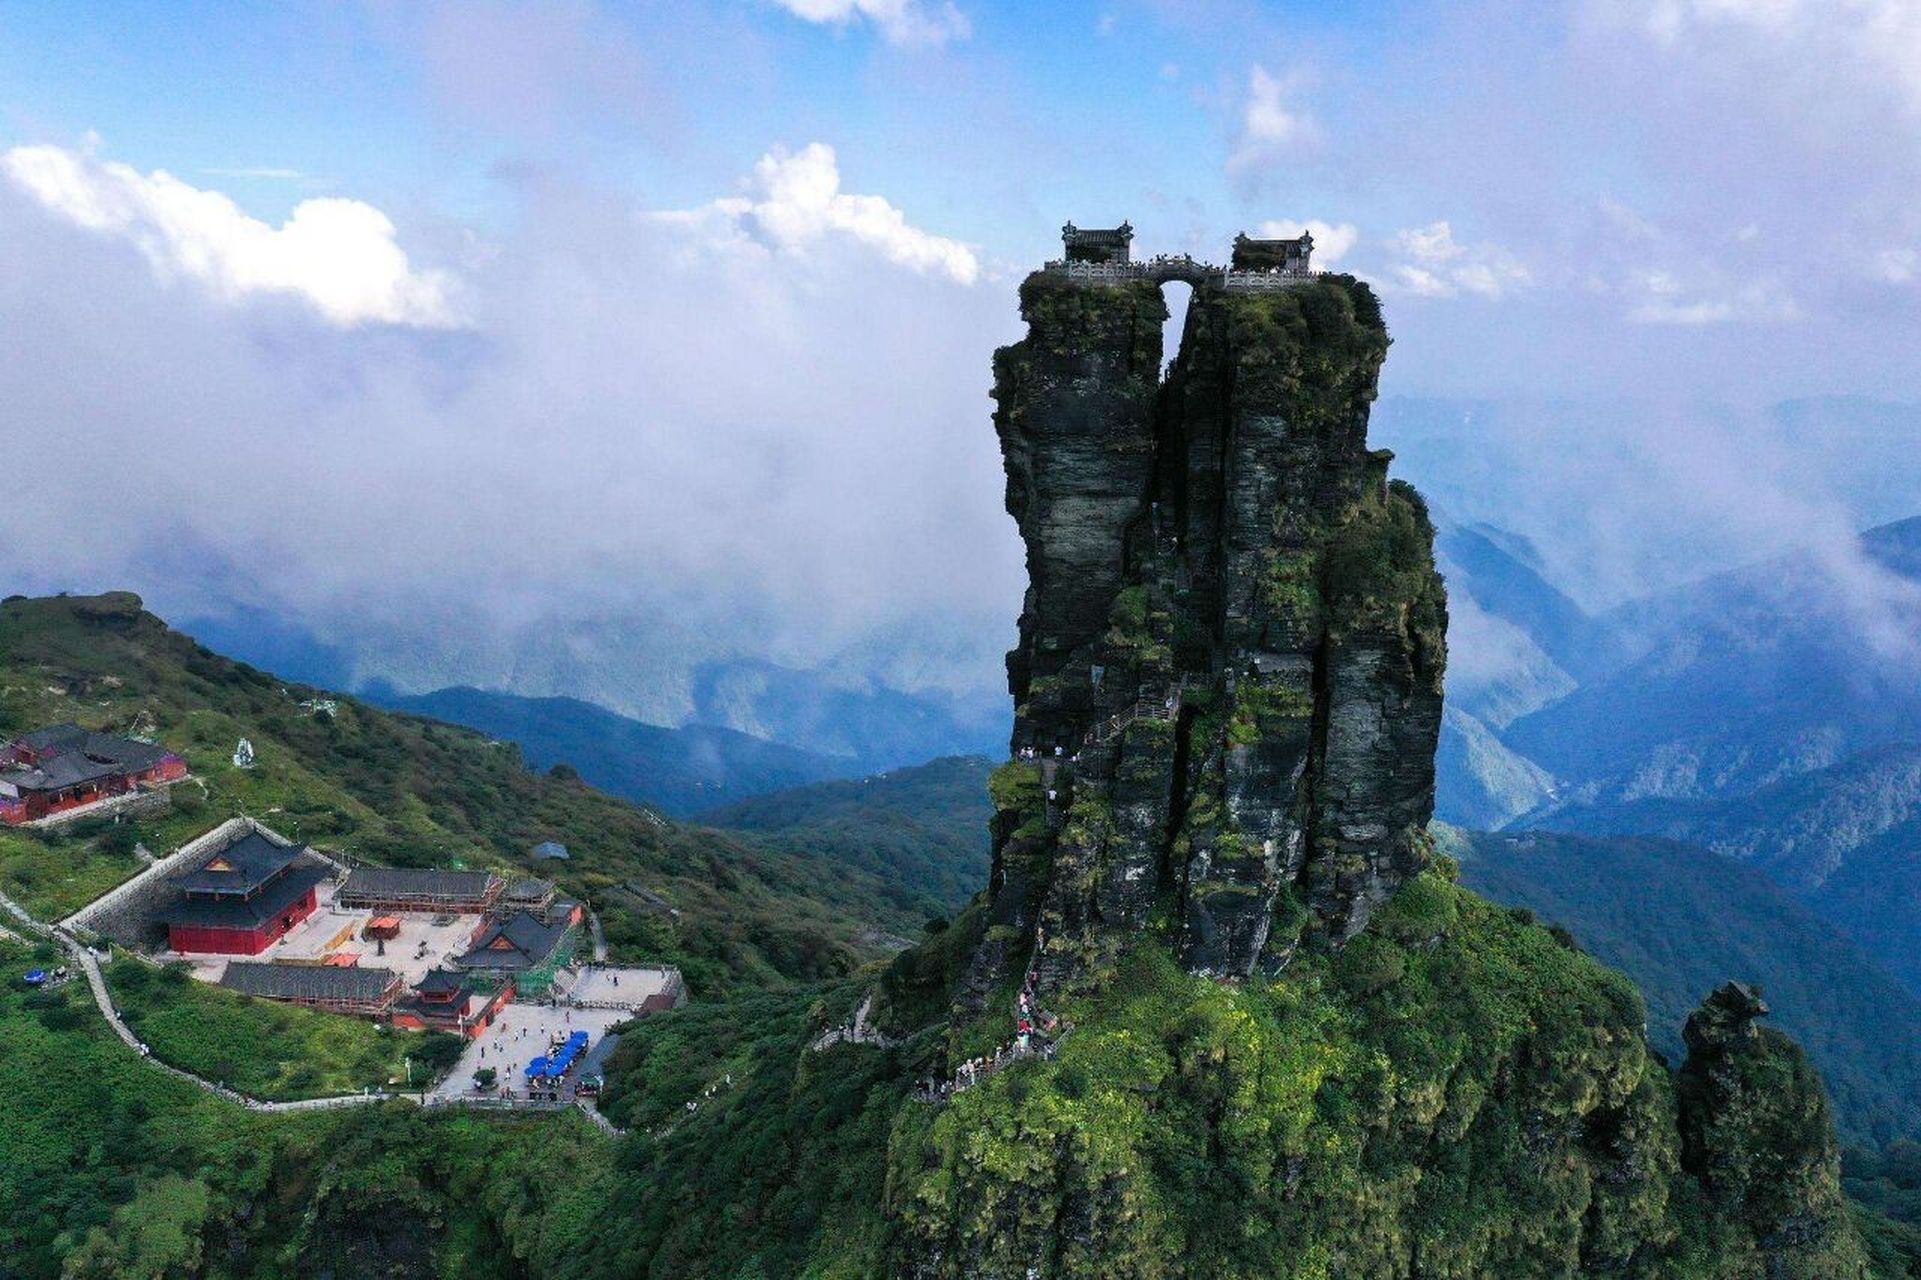 贵州铜仁梵净山风景区 梵净山被称为贵州第一名山,武陵第一峰,无论